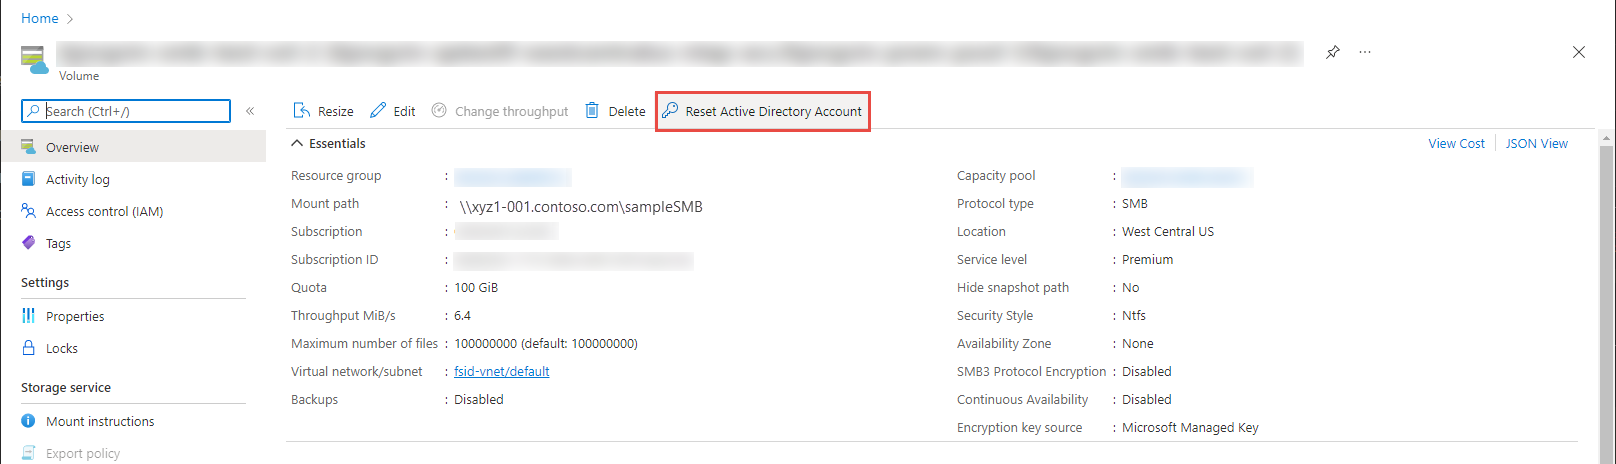 Interfaz de información general del volumen de Azure con el botón de restablecer la cuenta de Active Directory resaltado.